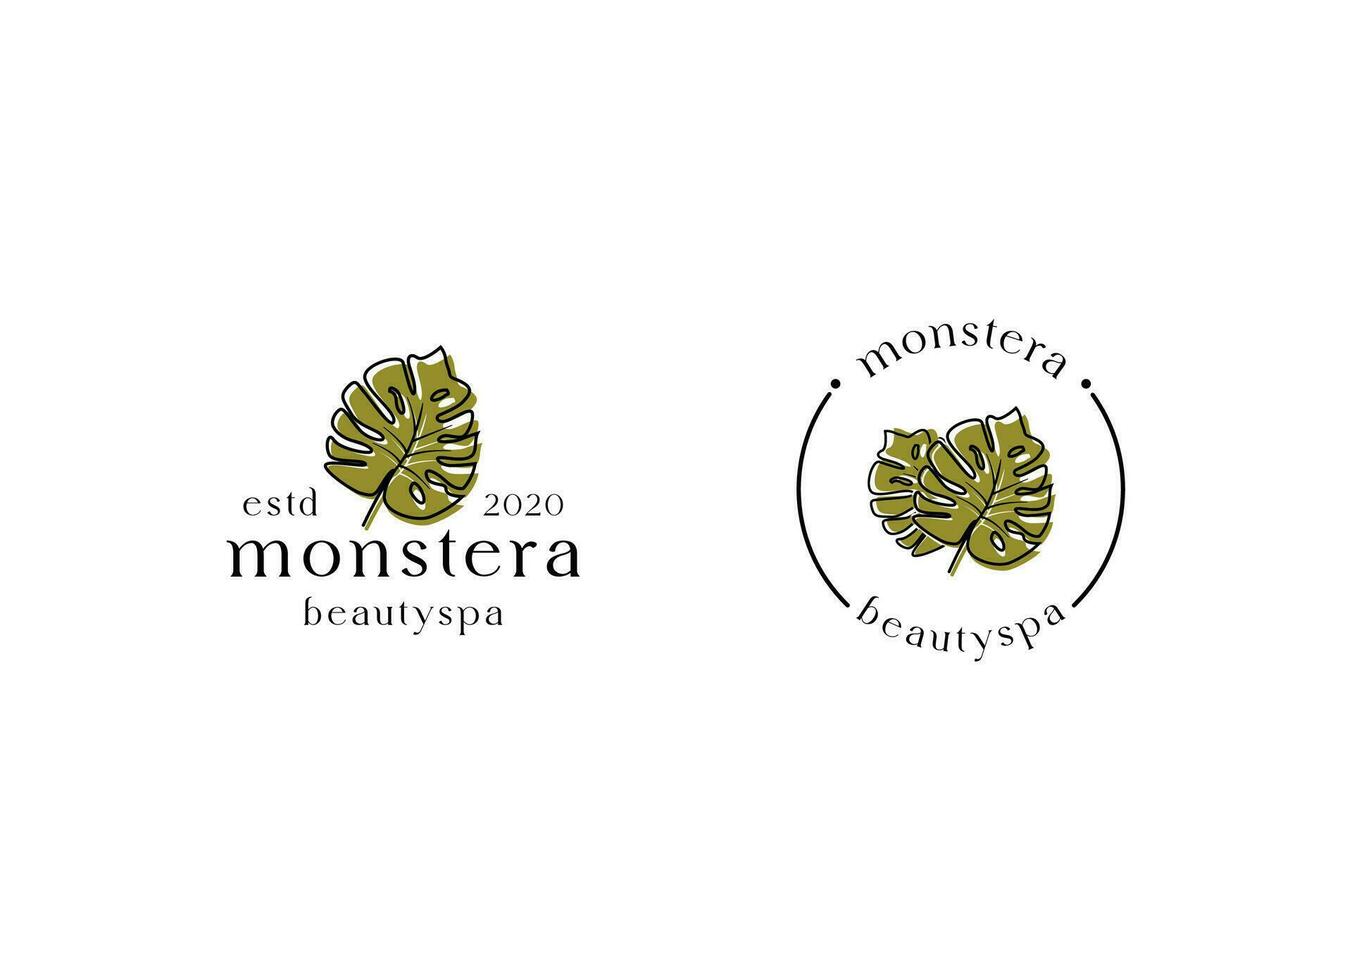 Logo der tropischen Pflanzenblätter. Monstera hinterlässt Logo-Design. Vektorillustrationen. vektor